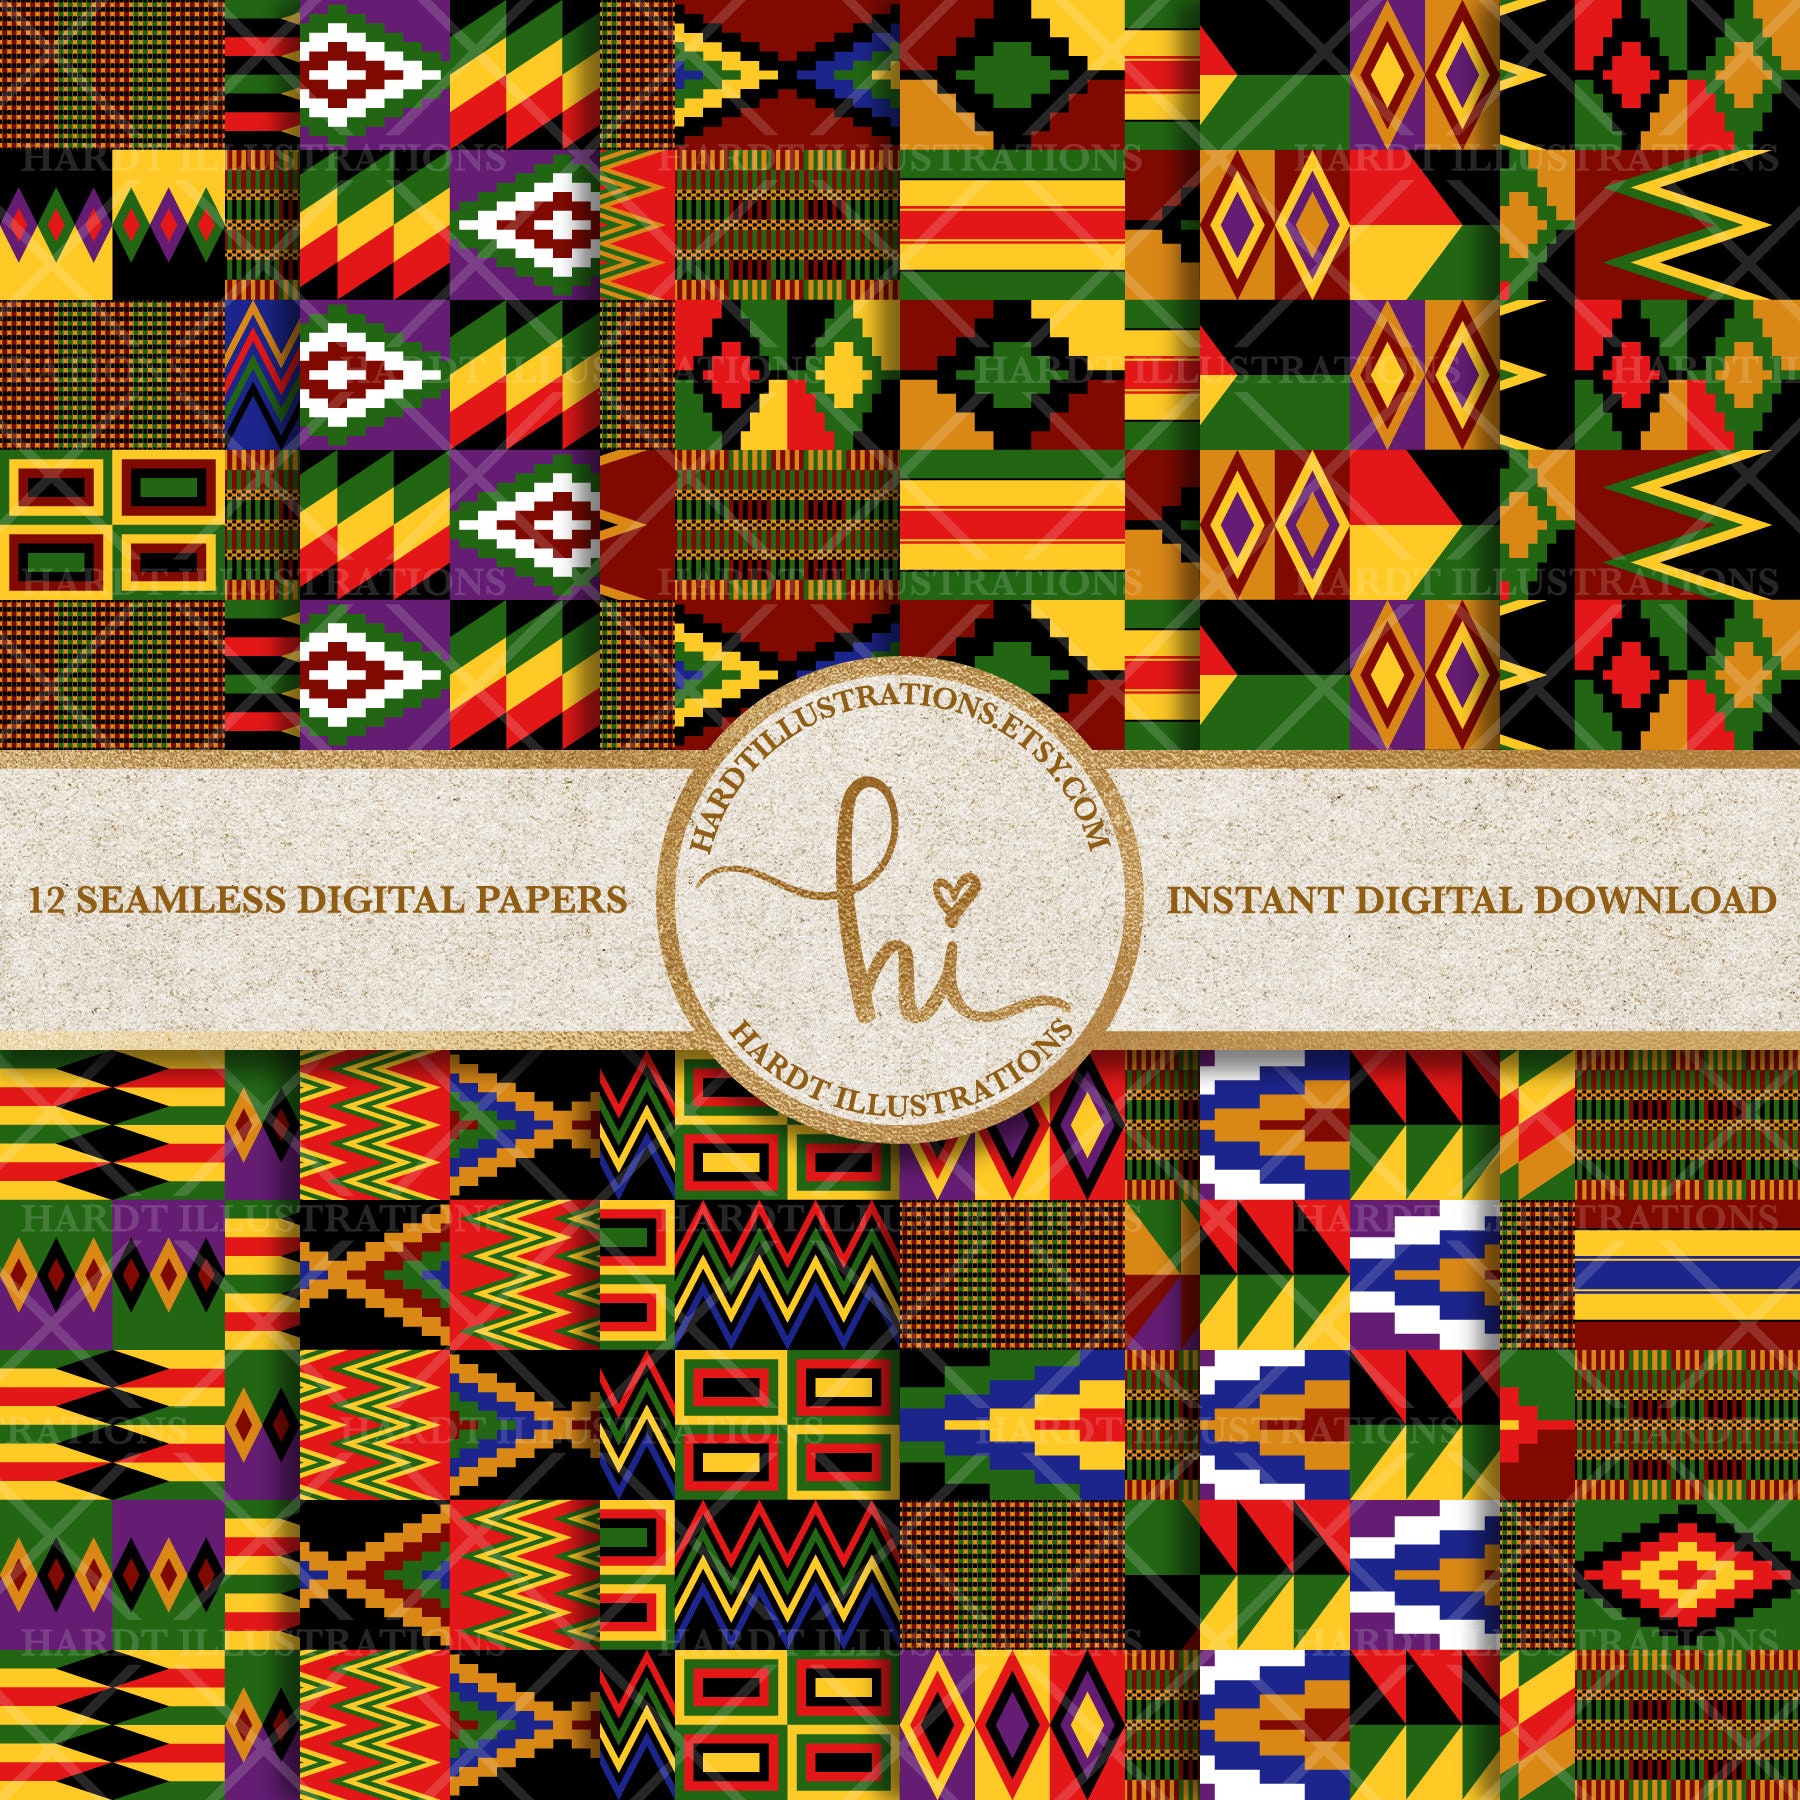 Hãy cùng khám phá những tài liệu giấy màu vải Kente đầy màu sắc đặc trưng của Ghana với những tông màu rực rỡ và các hoa văn độc đáo. Với sức cuốn hút của mình, giấy màu Vải Kente có thể khơi gợi và đem lại sức sống cho mọi thiết kế.